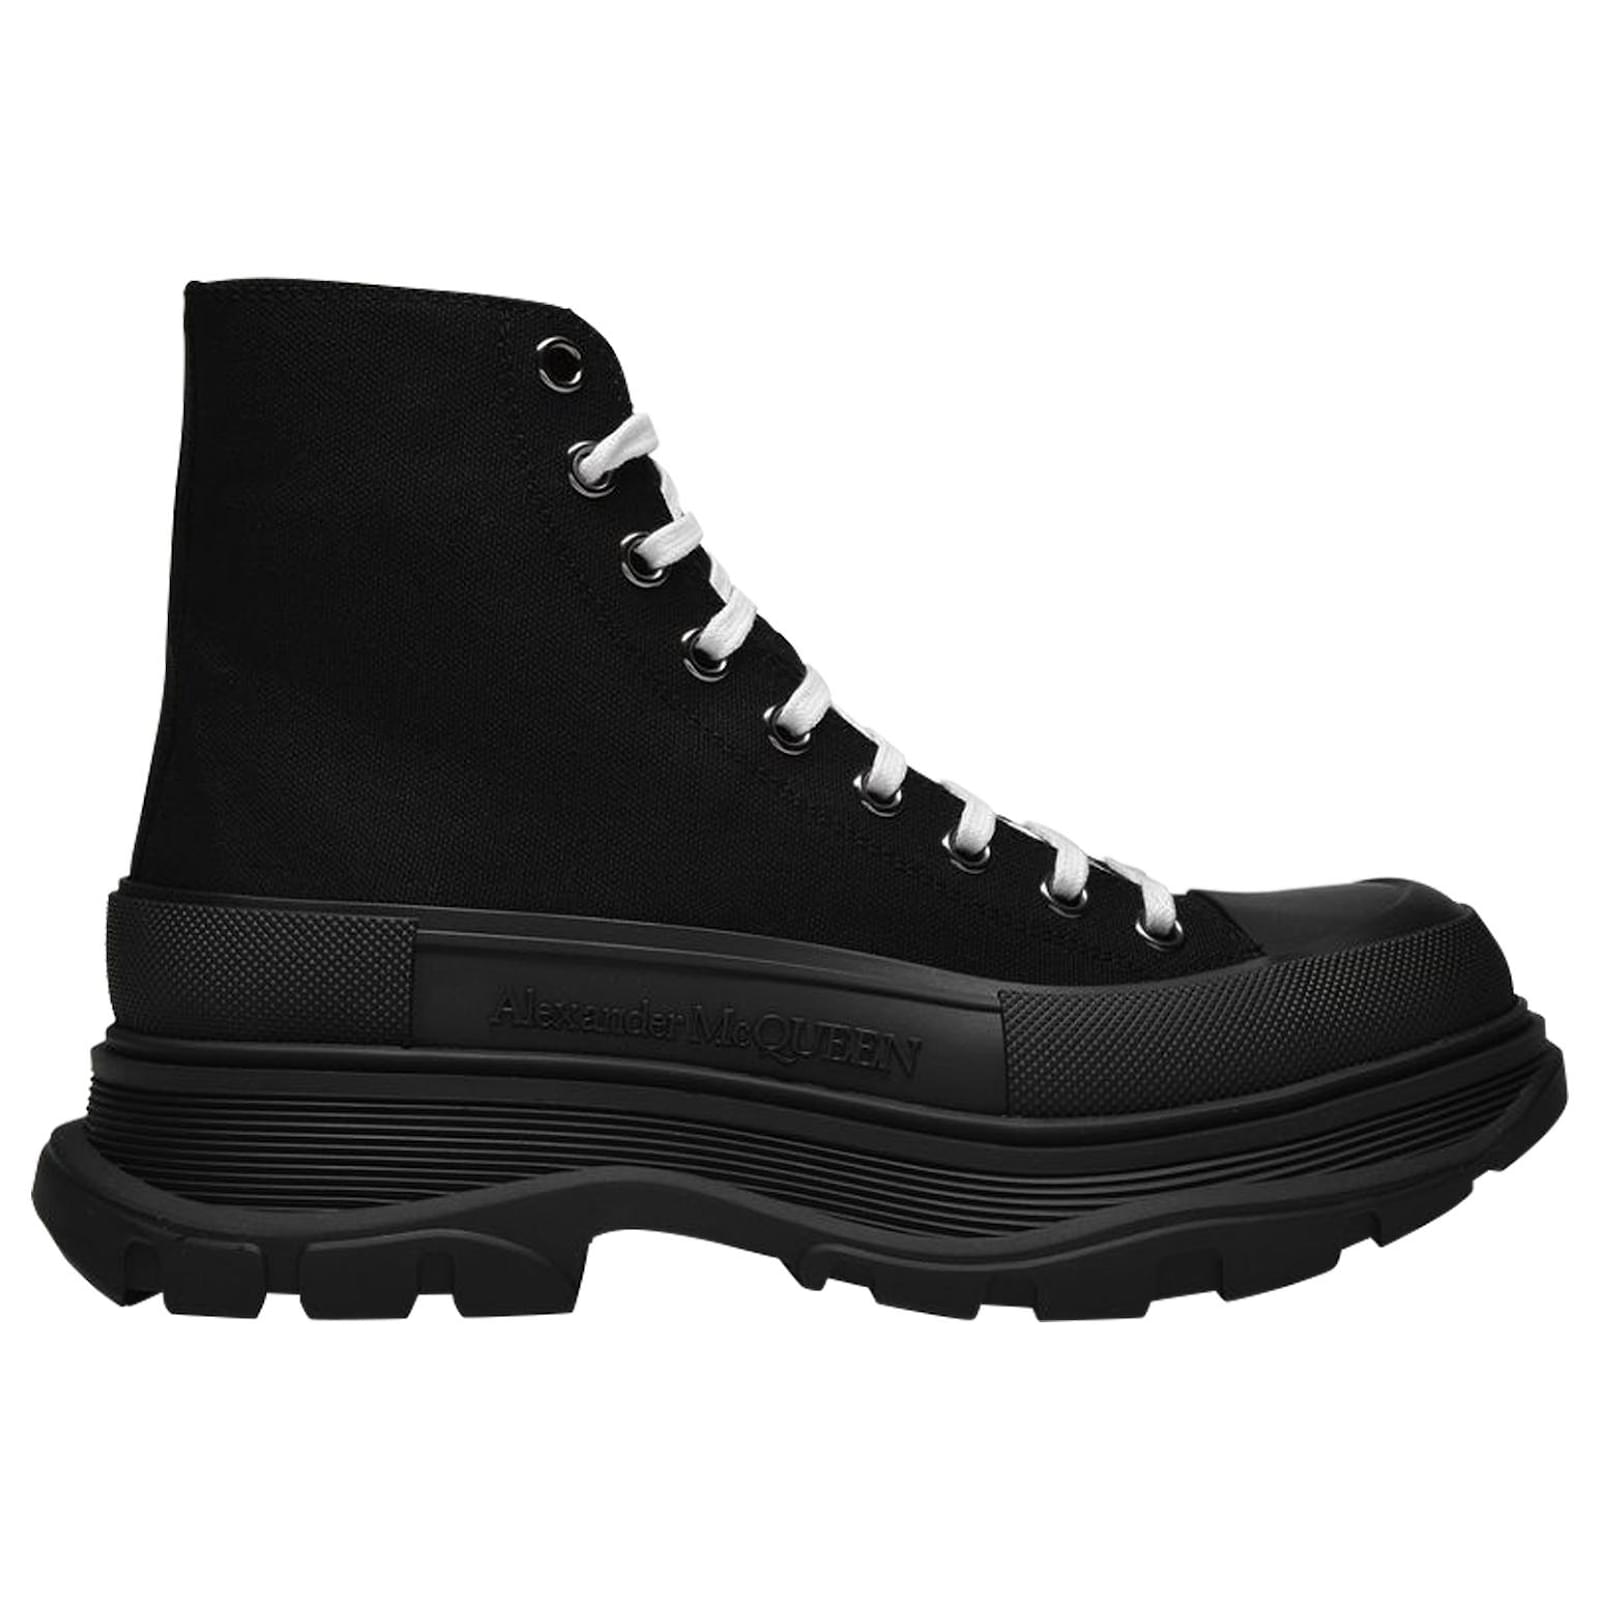 Alexander Mcqueen Tread Slick Sneakers in Black Canvas Leather ref